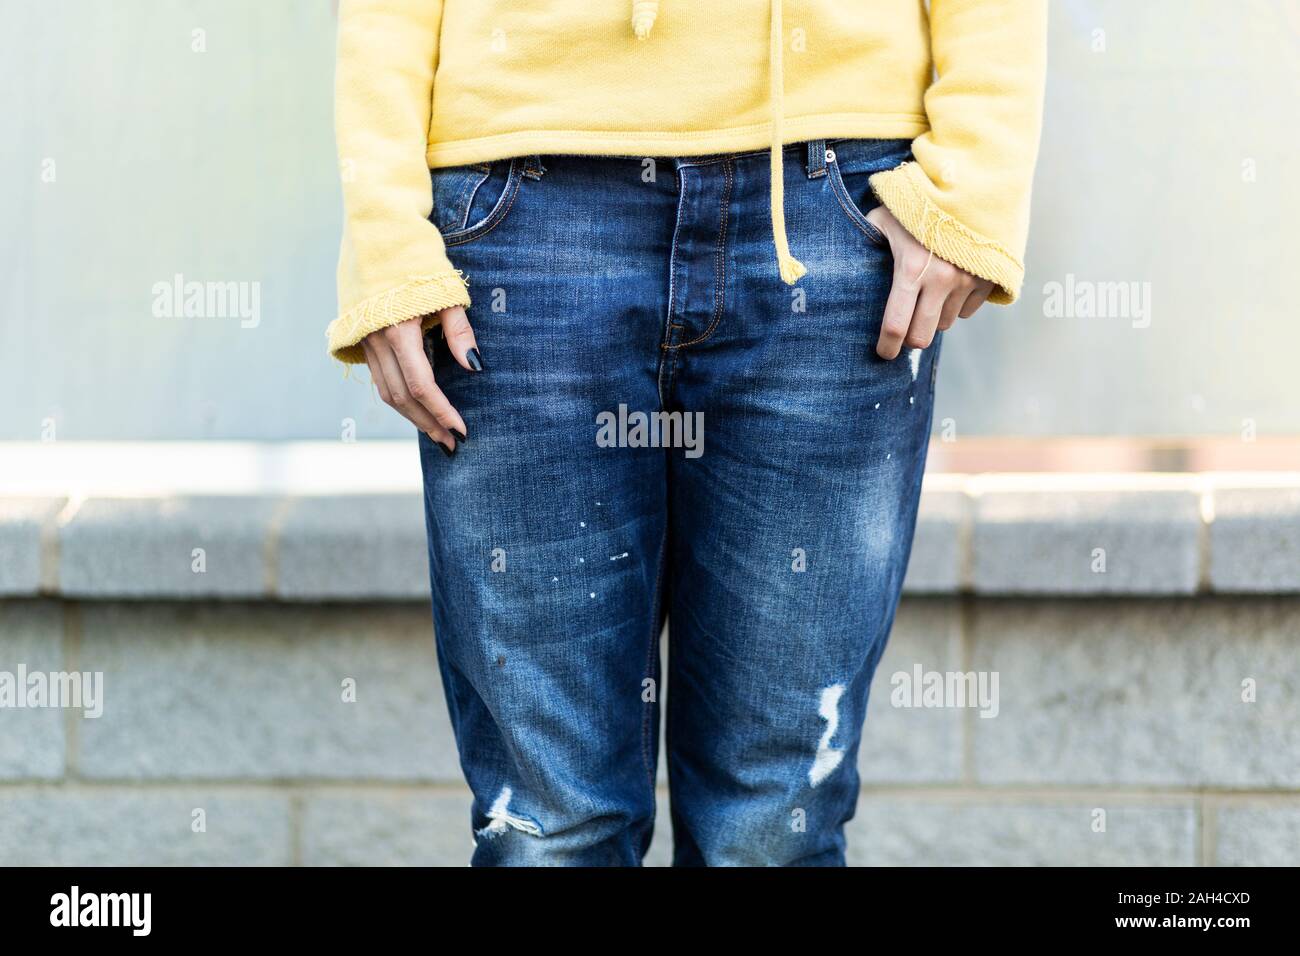 Jeune femme portant un jean bleu foncé ancien, vue partielle Banque D'Images